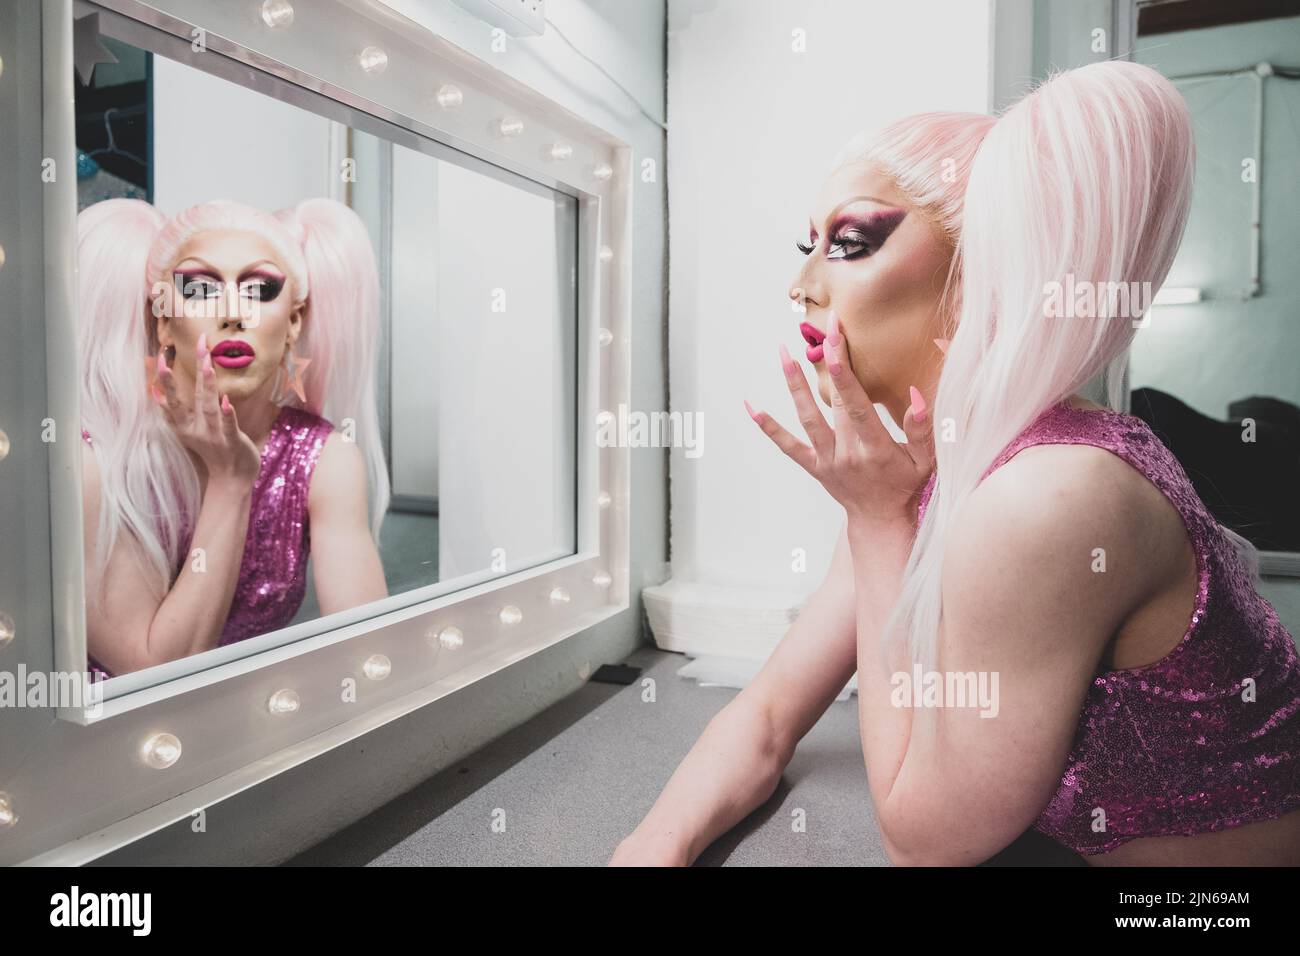 Personne non binaire appliquant faire glisser Reine maquillage Backstage, regardant dans miroir Banque D'Images